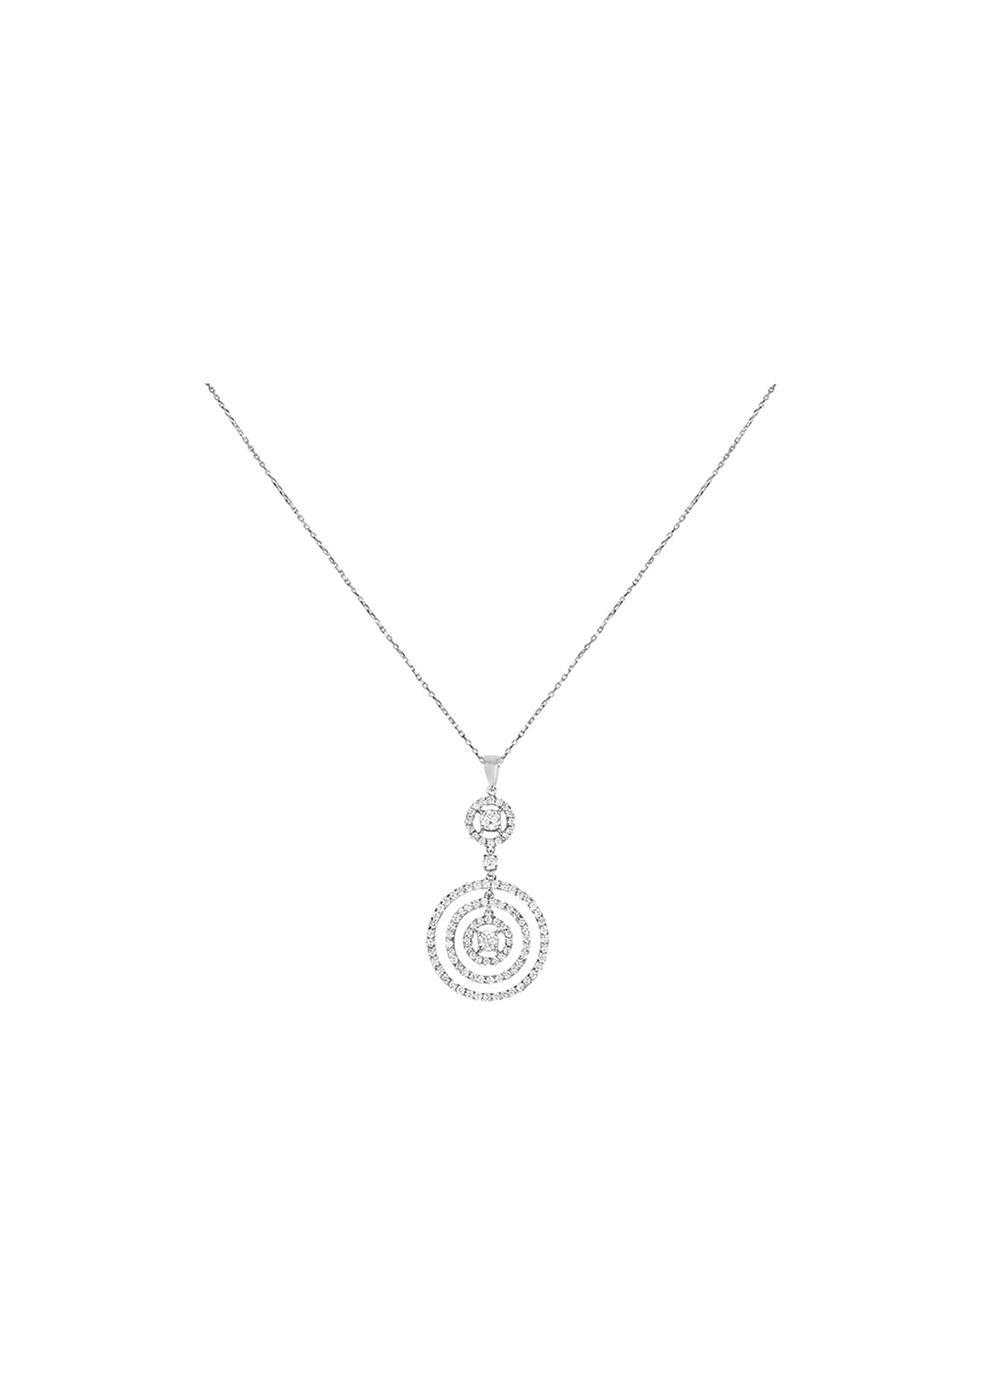 Bespoke 18ct White Gold Diamond Pendant Necklace - image 1